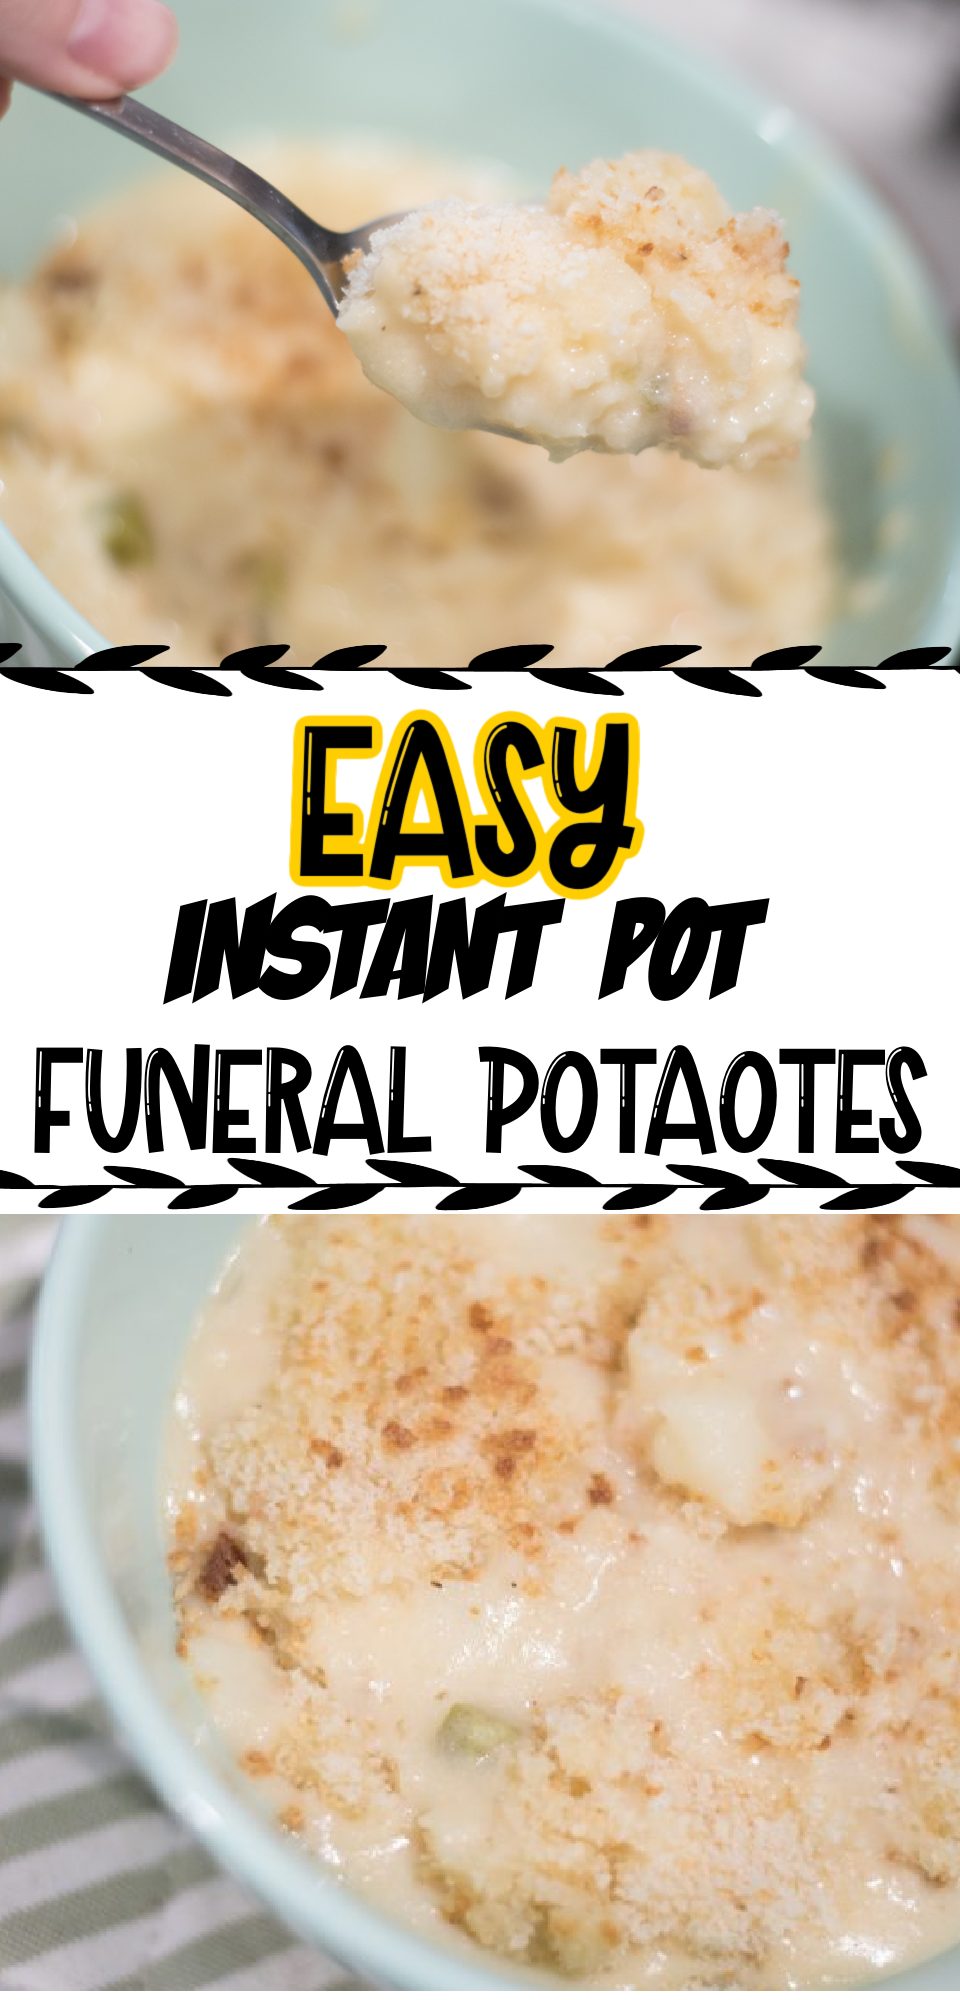 Instant Pot Funeral Potatoes Recipe